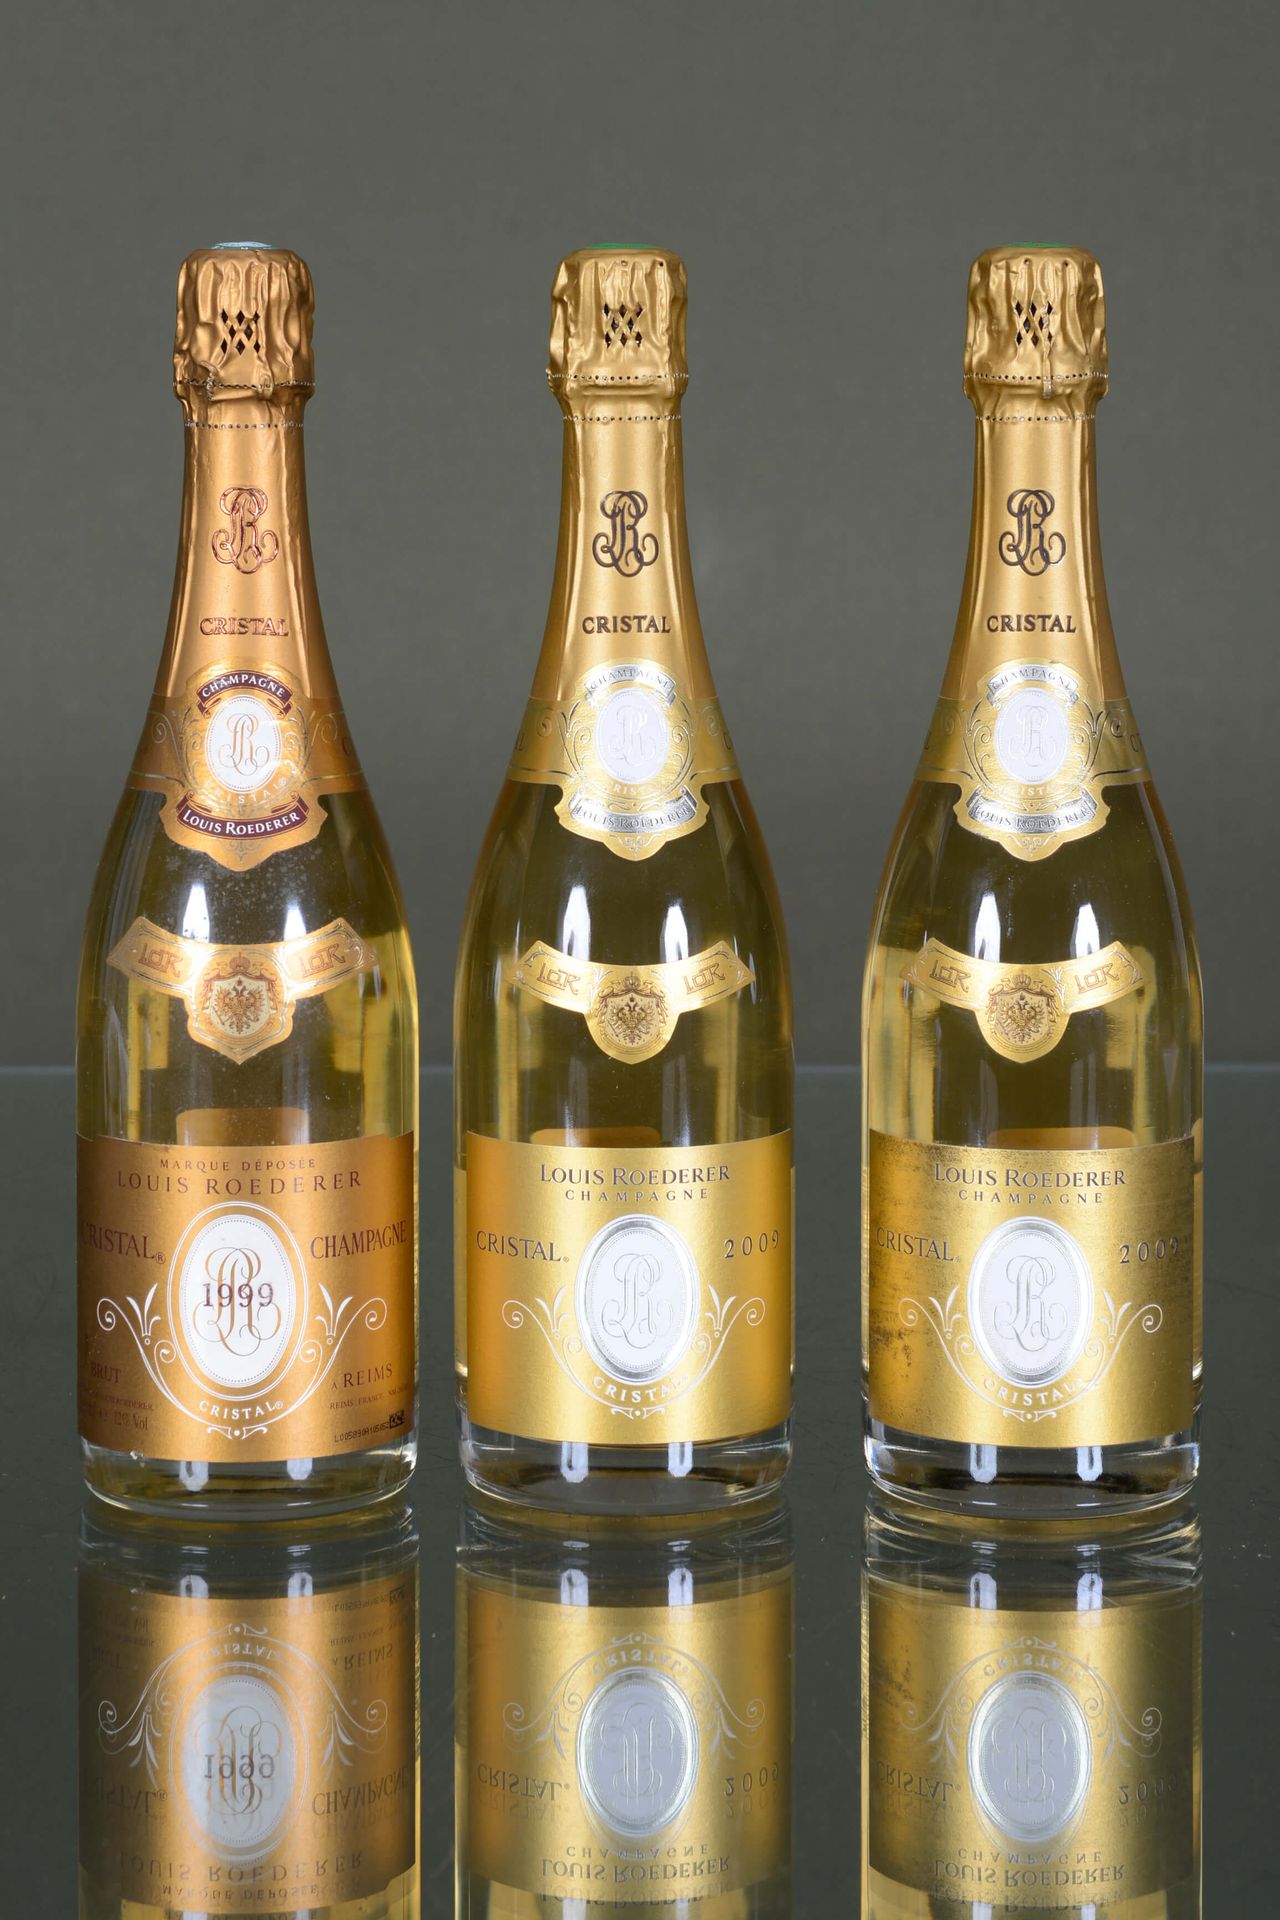 Champagne Cristal Roederer 1 bottiglia, 1999 + 2 bottiglie, 2009

Rapporto sulle&hellip;